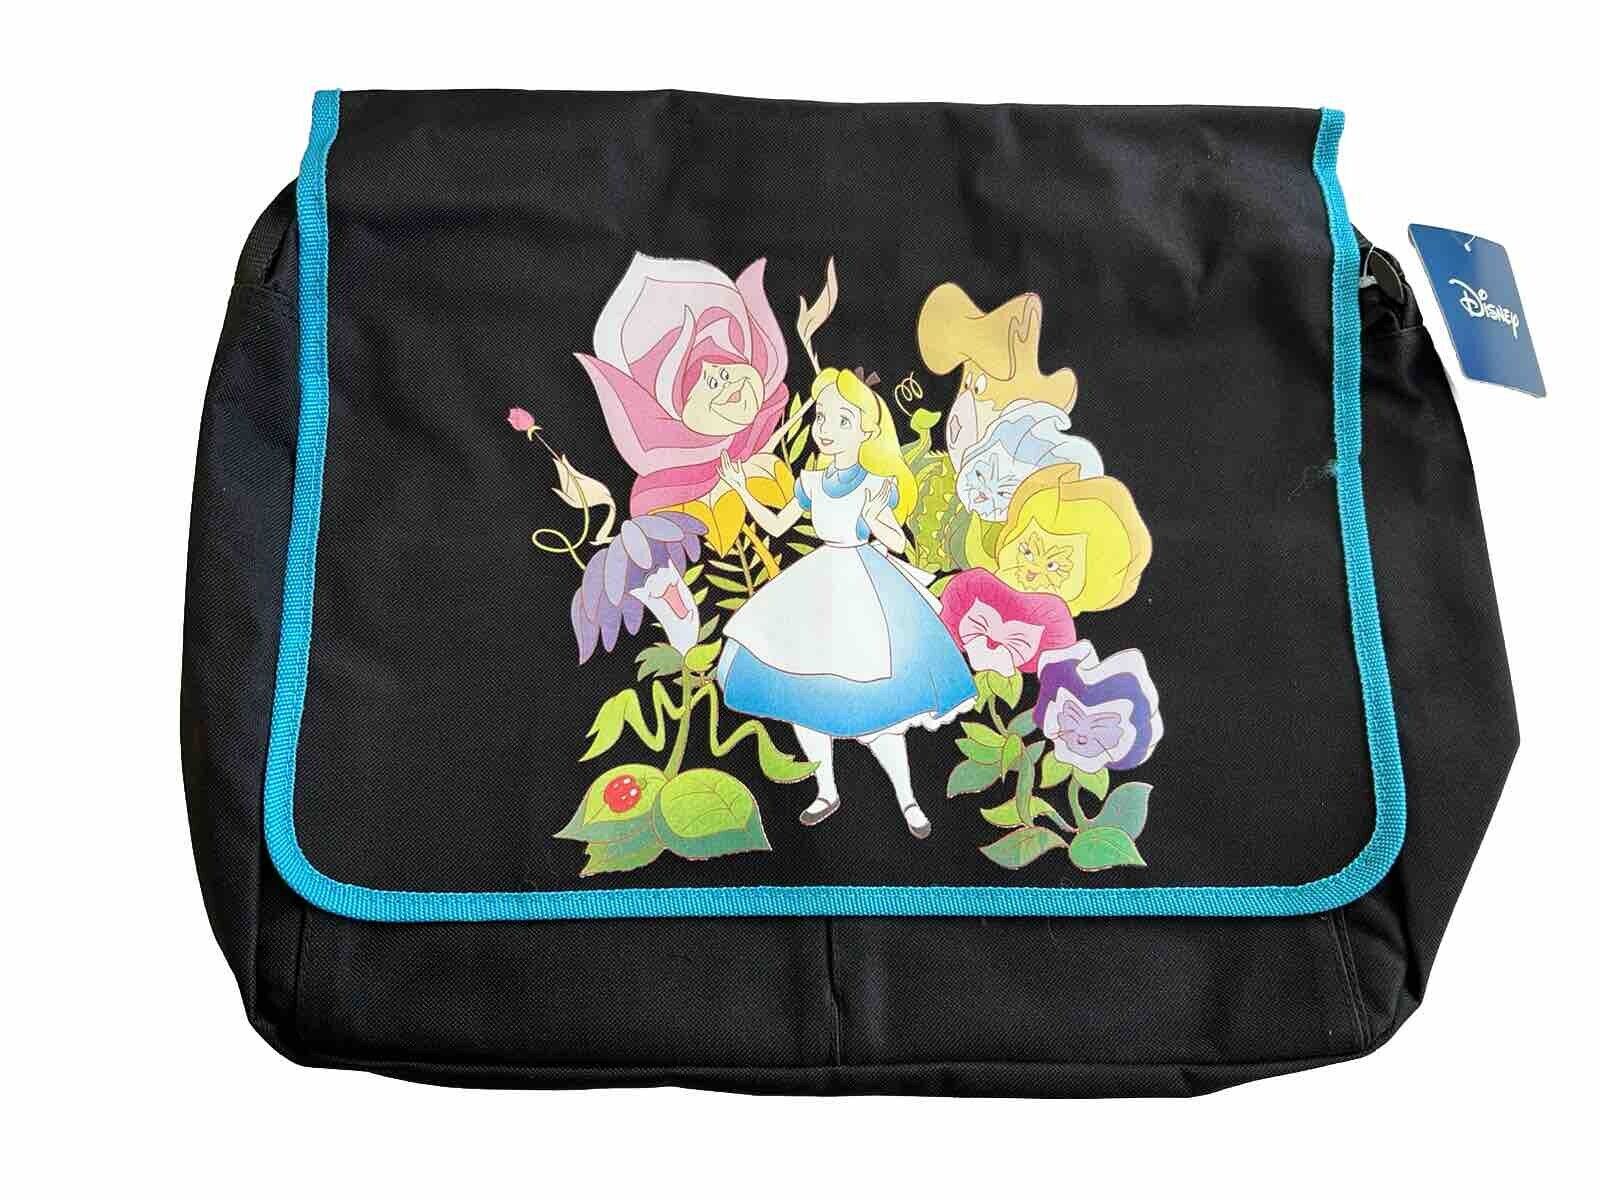 Disney Alice in Wonderland Large Messenger Bag Carry All Travel Bag